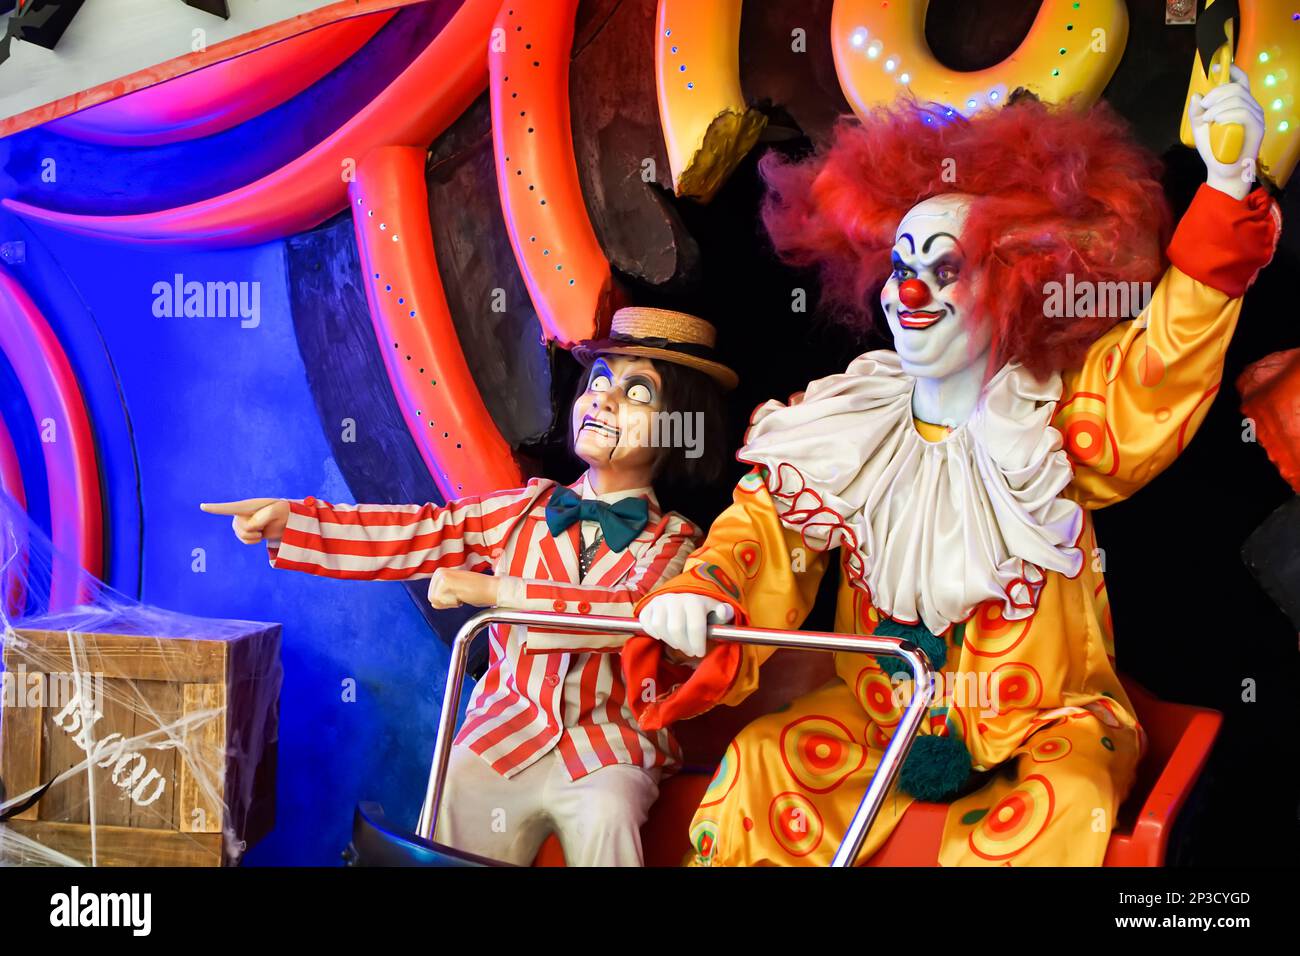 Les clowns de poupée sont assis dans un chariot et agitant leurs bras pointant dans la direction. Effrayant. Halloween. La chasse. Photo de haute qualité Banque D'Images